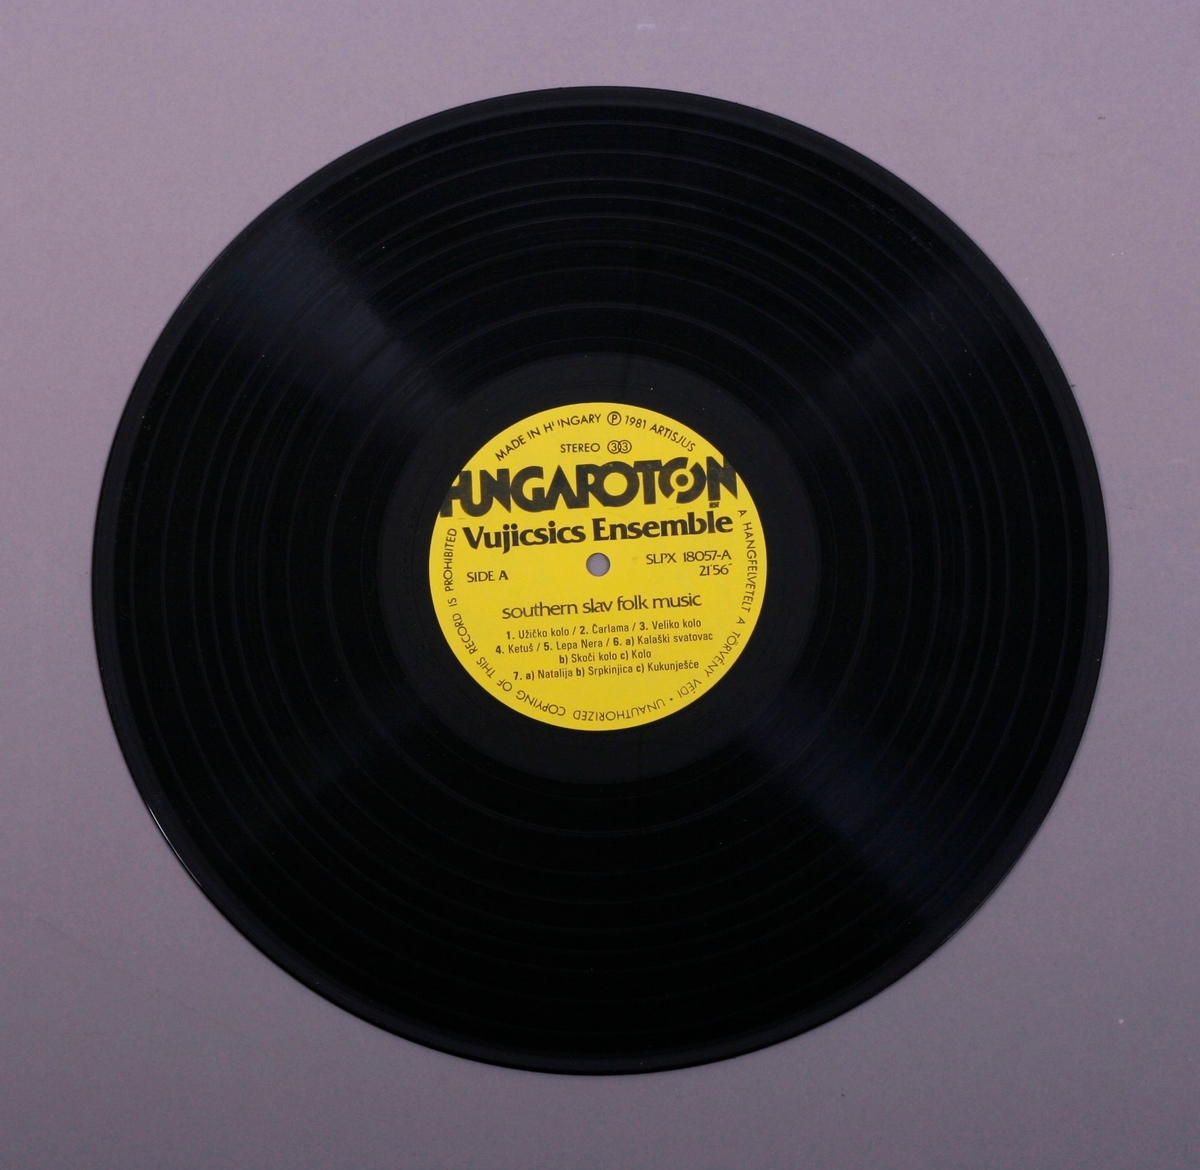 Grammofonplate i svart vinyl og dobbelt plateomslag i papp. Plata ligger i en papirlomme med plastfôr.